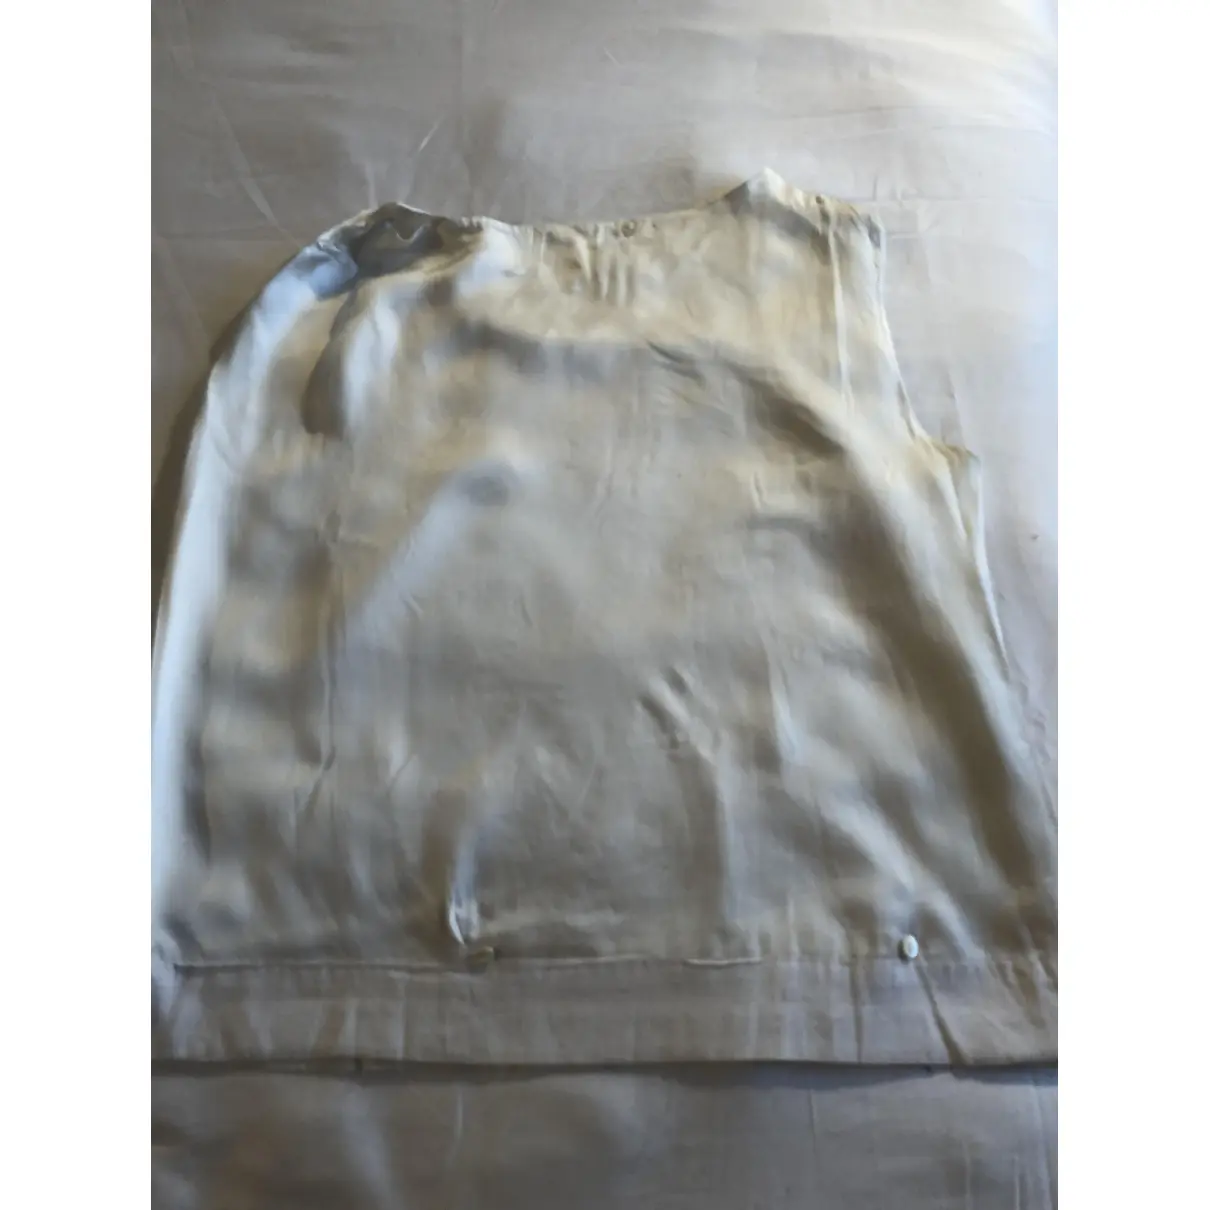 Buy Dries Van Noten Silk blouse online